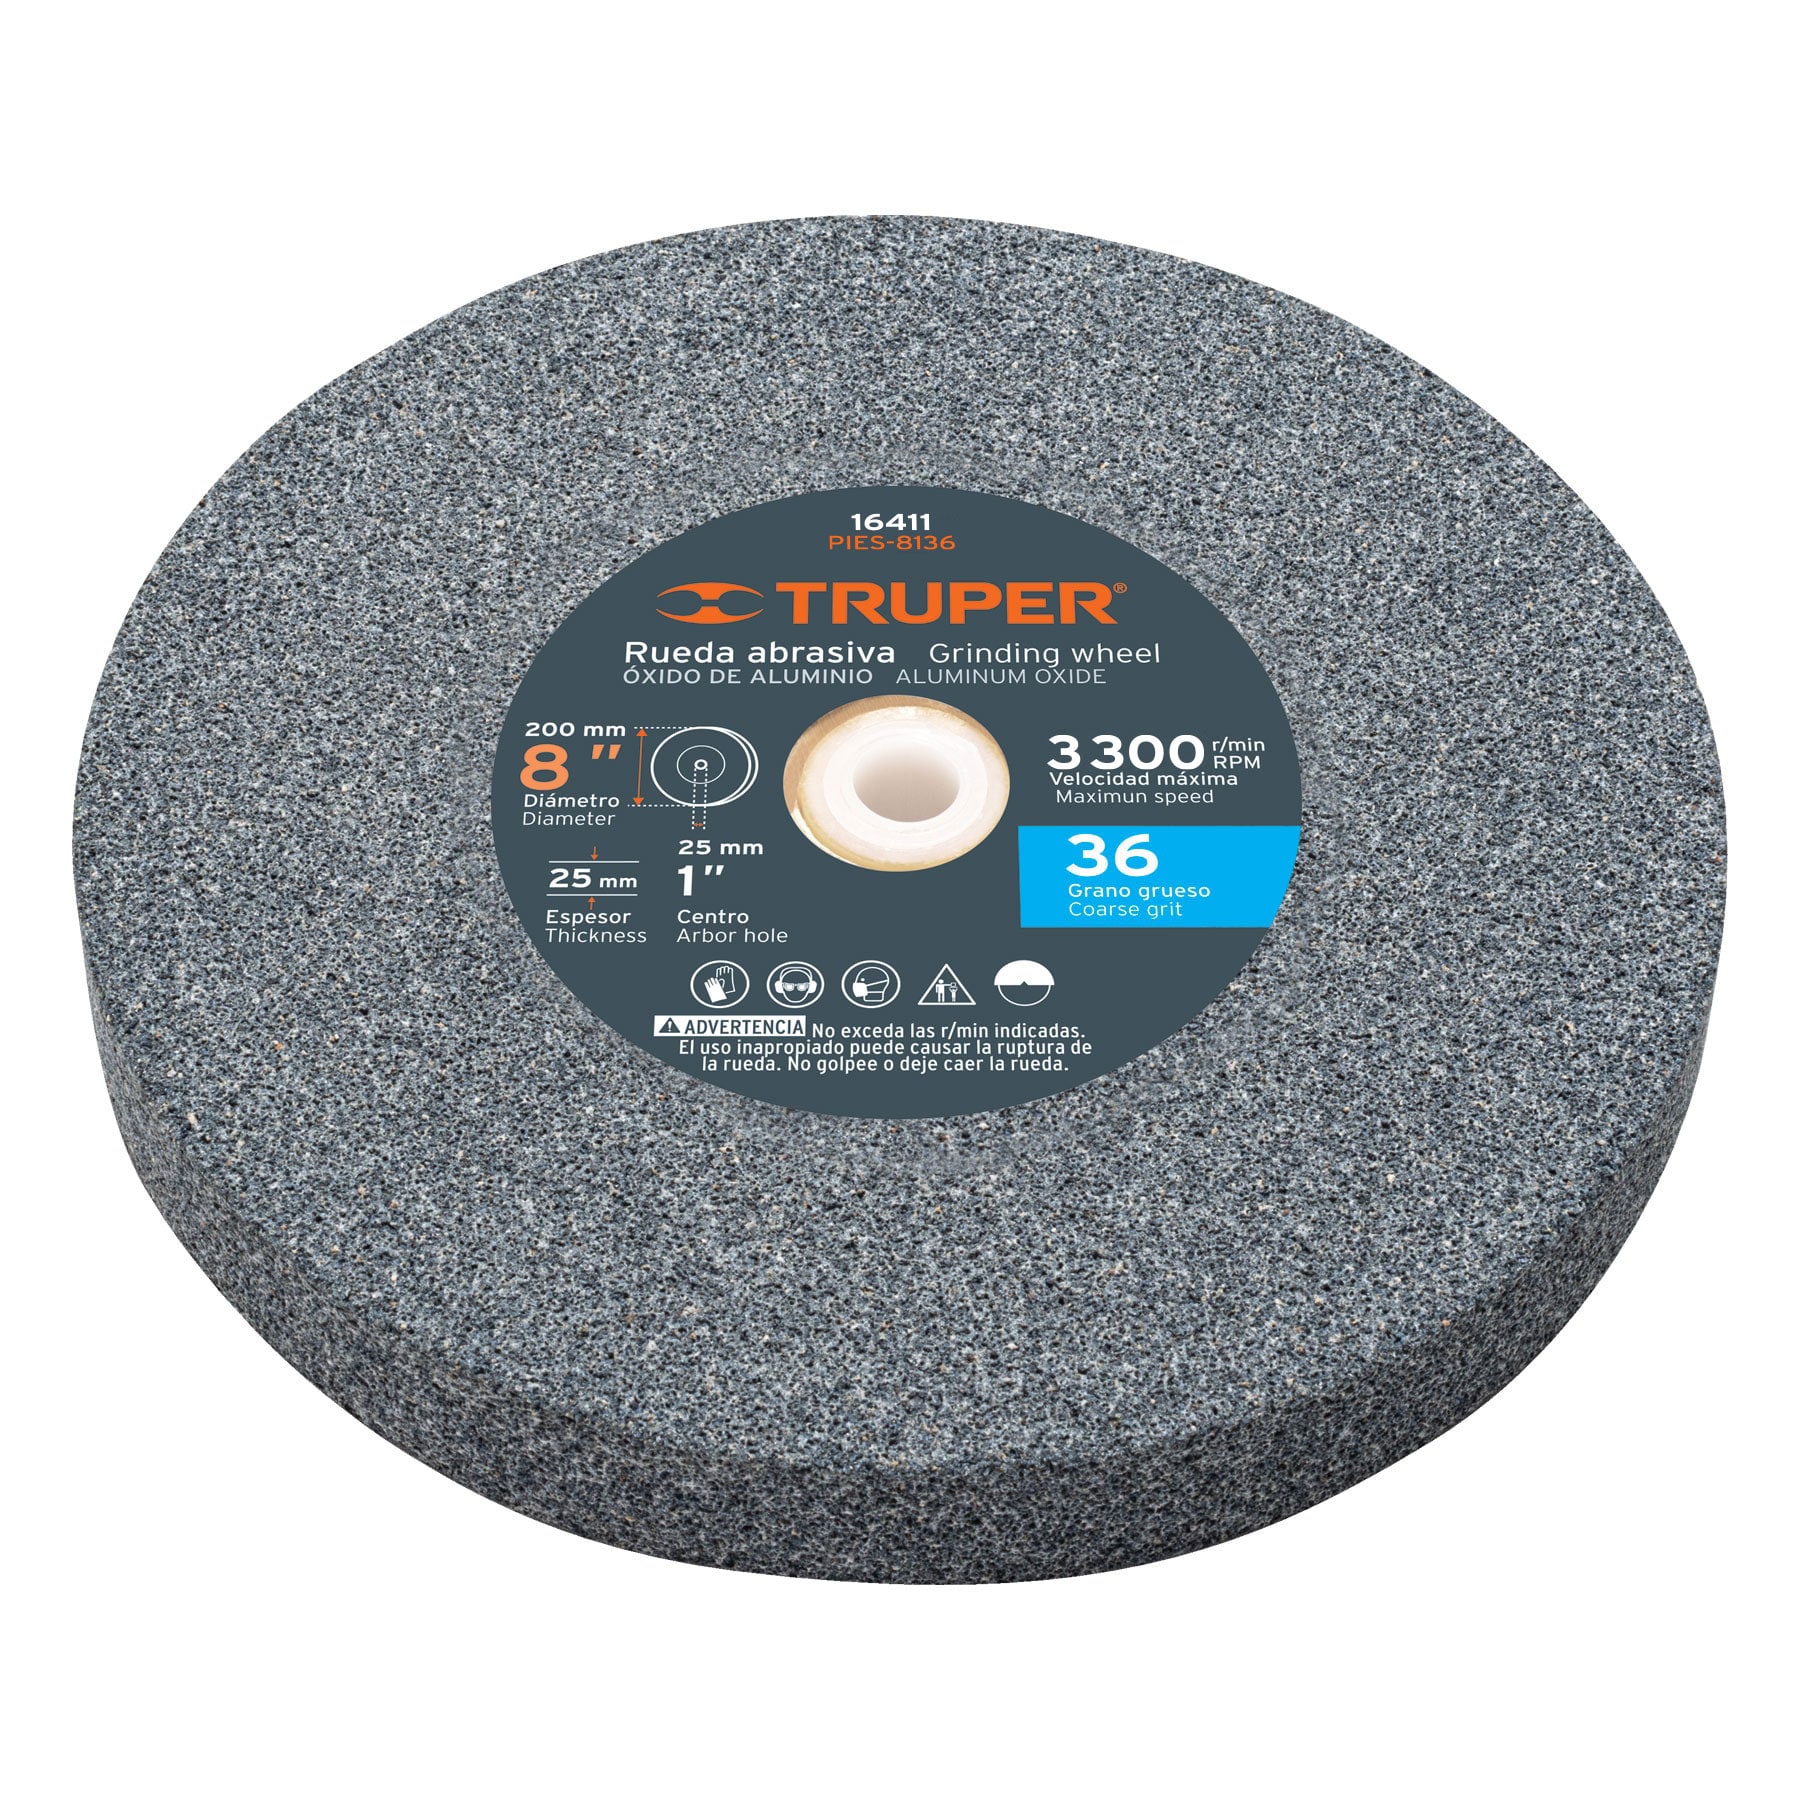 Truper Aluminum Oxide Bench Grinding Wheels 8"